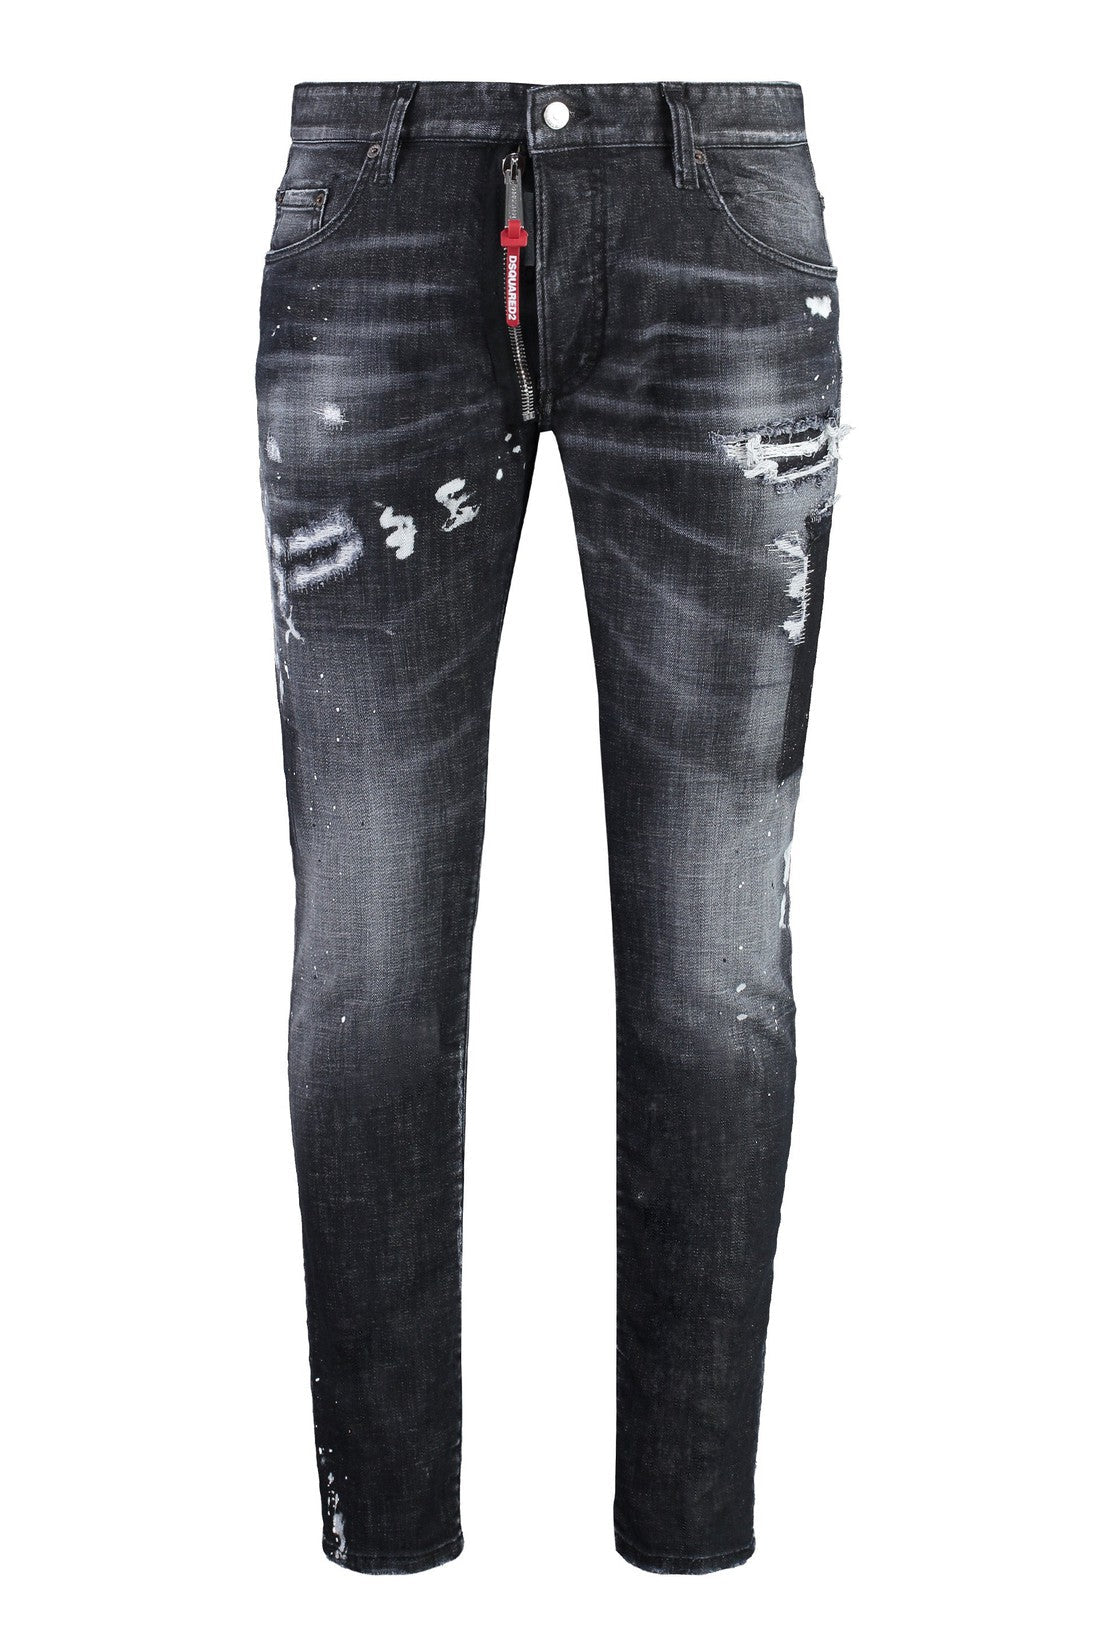 Dsquared2-OUTLET-SALE-Skater 5-pocket jeans-ARCHIVIST